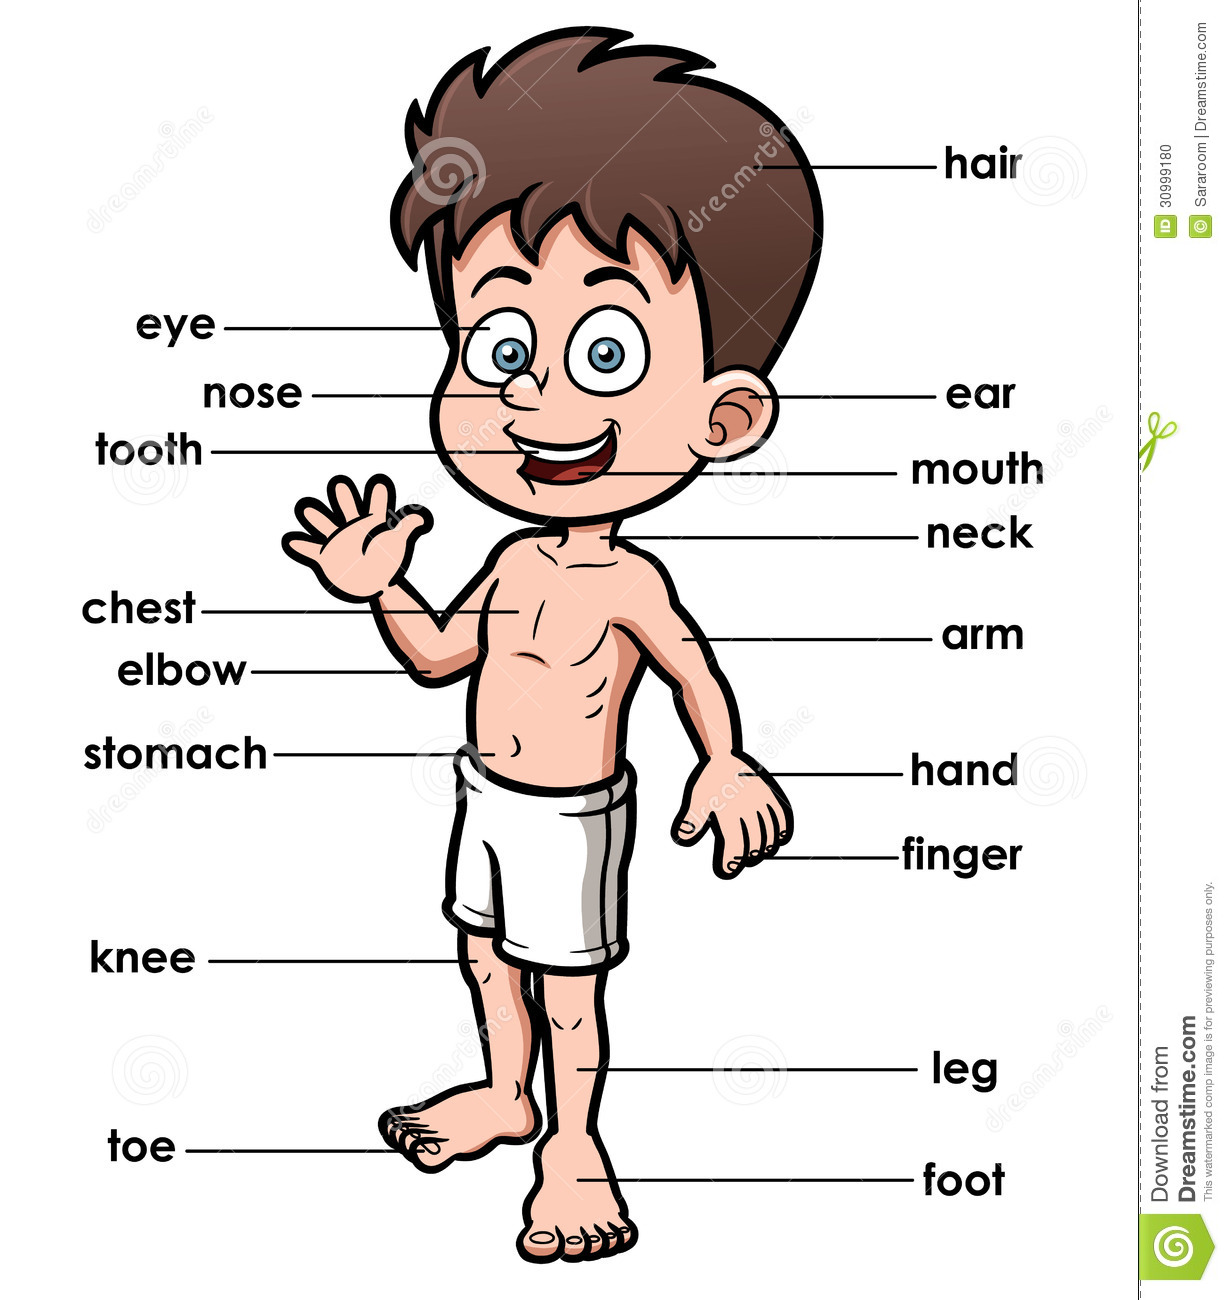 cartoon kid and body parts